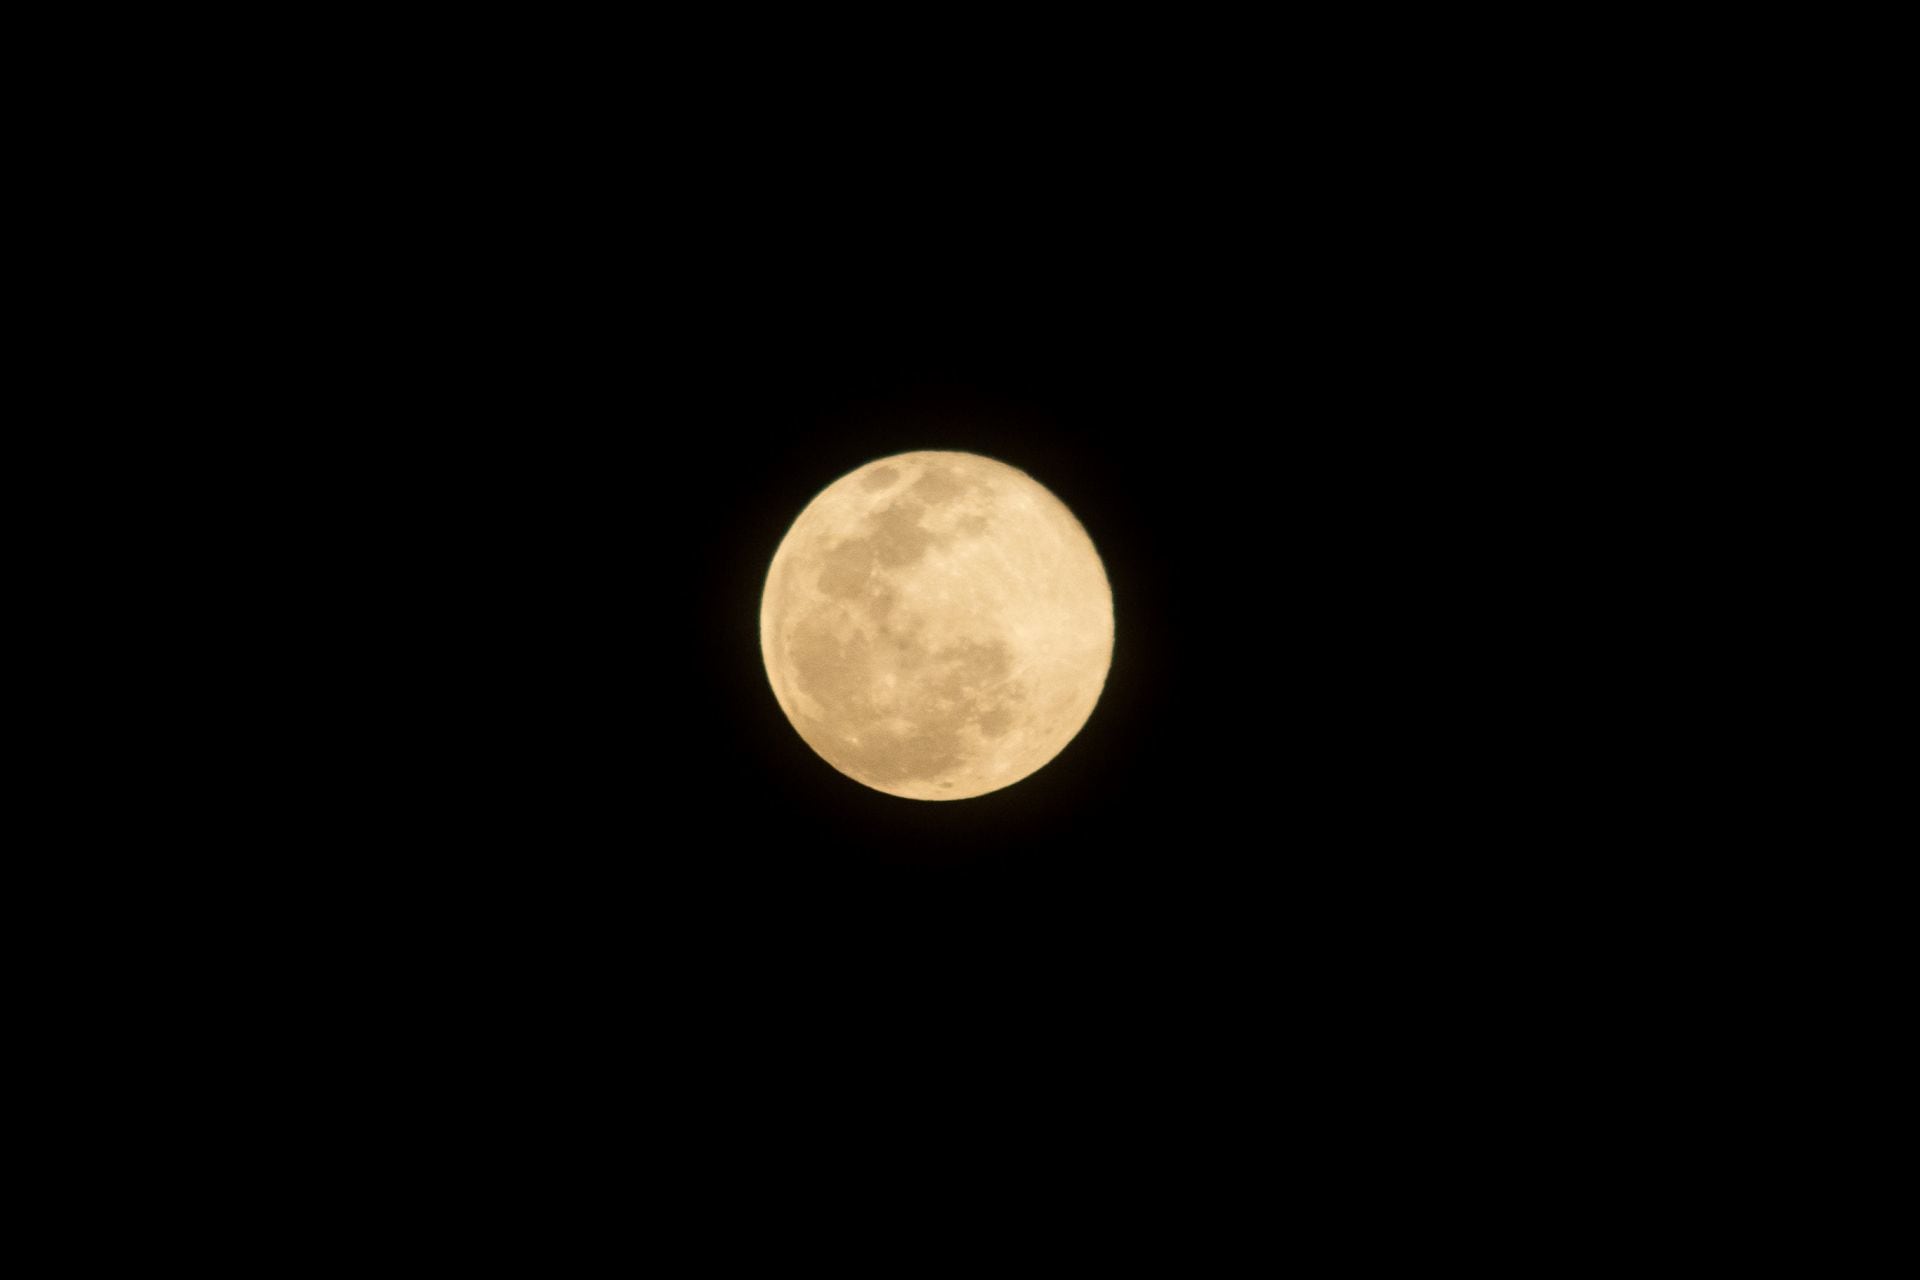 La también llamada luna de cosecha ocurrirá el próximo viernes 29 de septiembre (FOTO: GALO CAÑAS/CUARTOSCURO.COM)